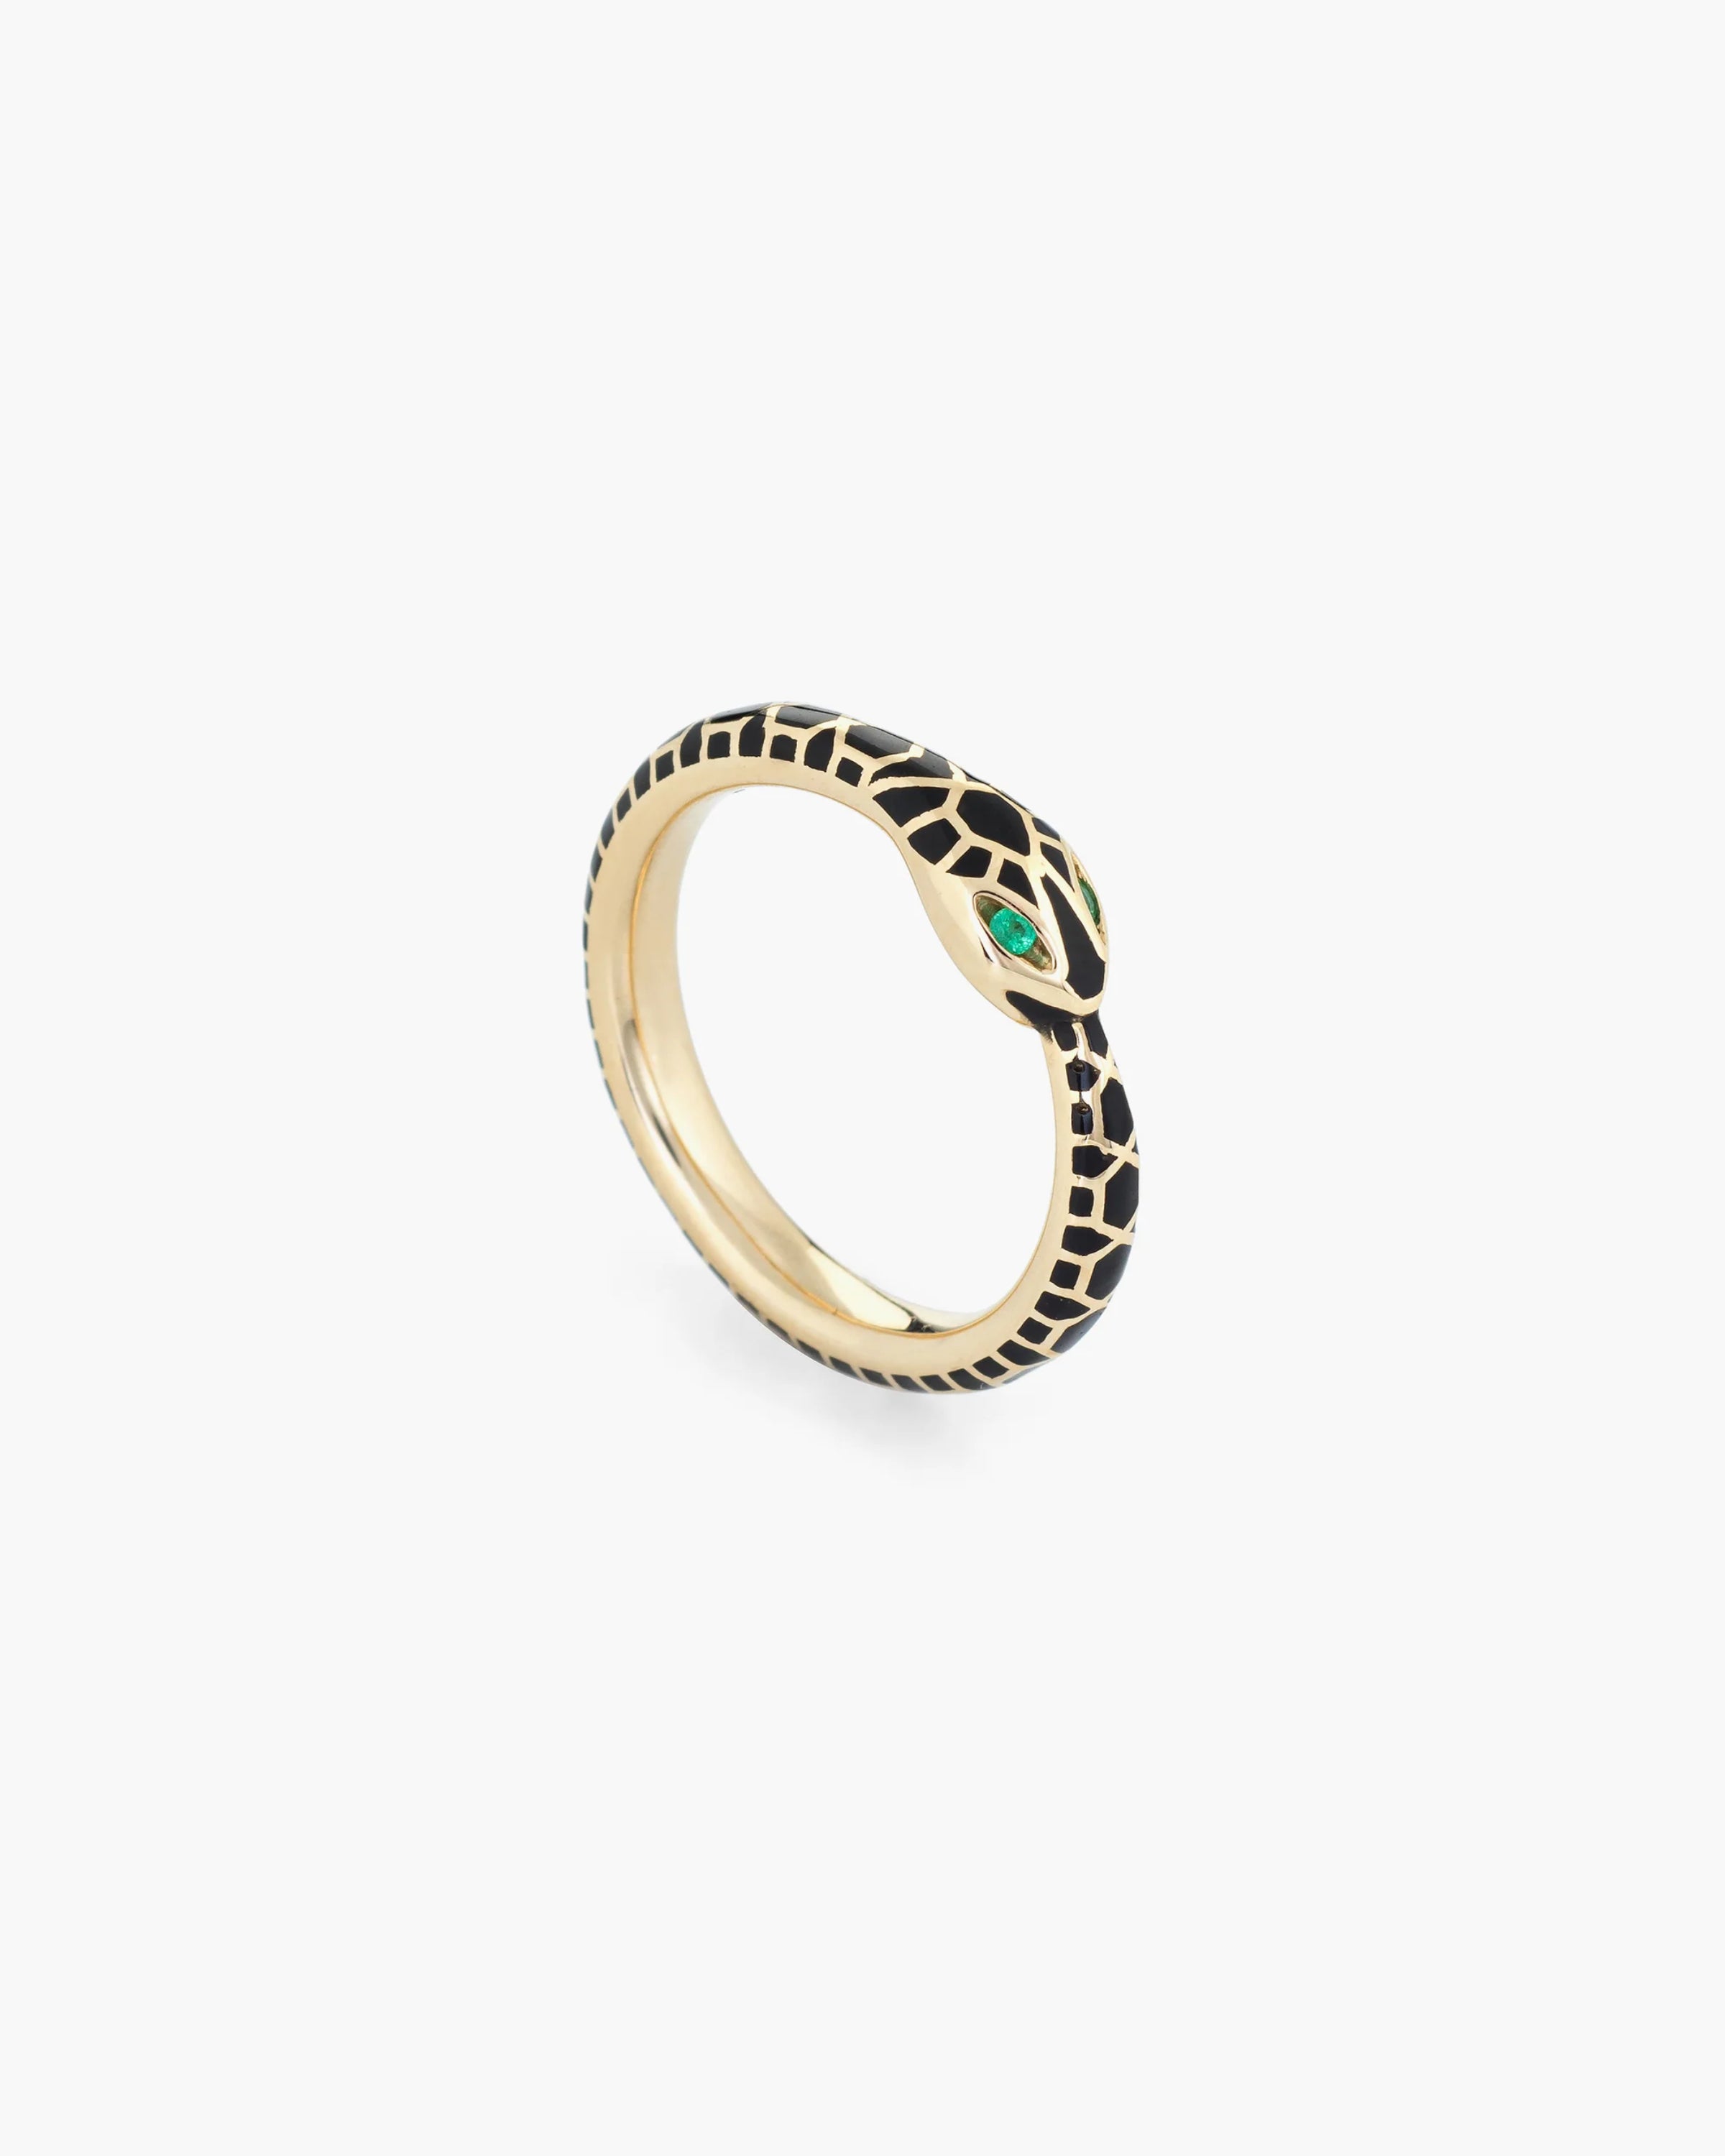 Ouroboros Emerald Eye Ring